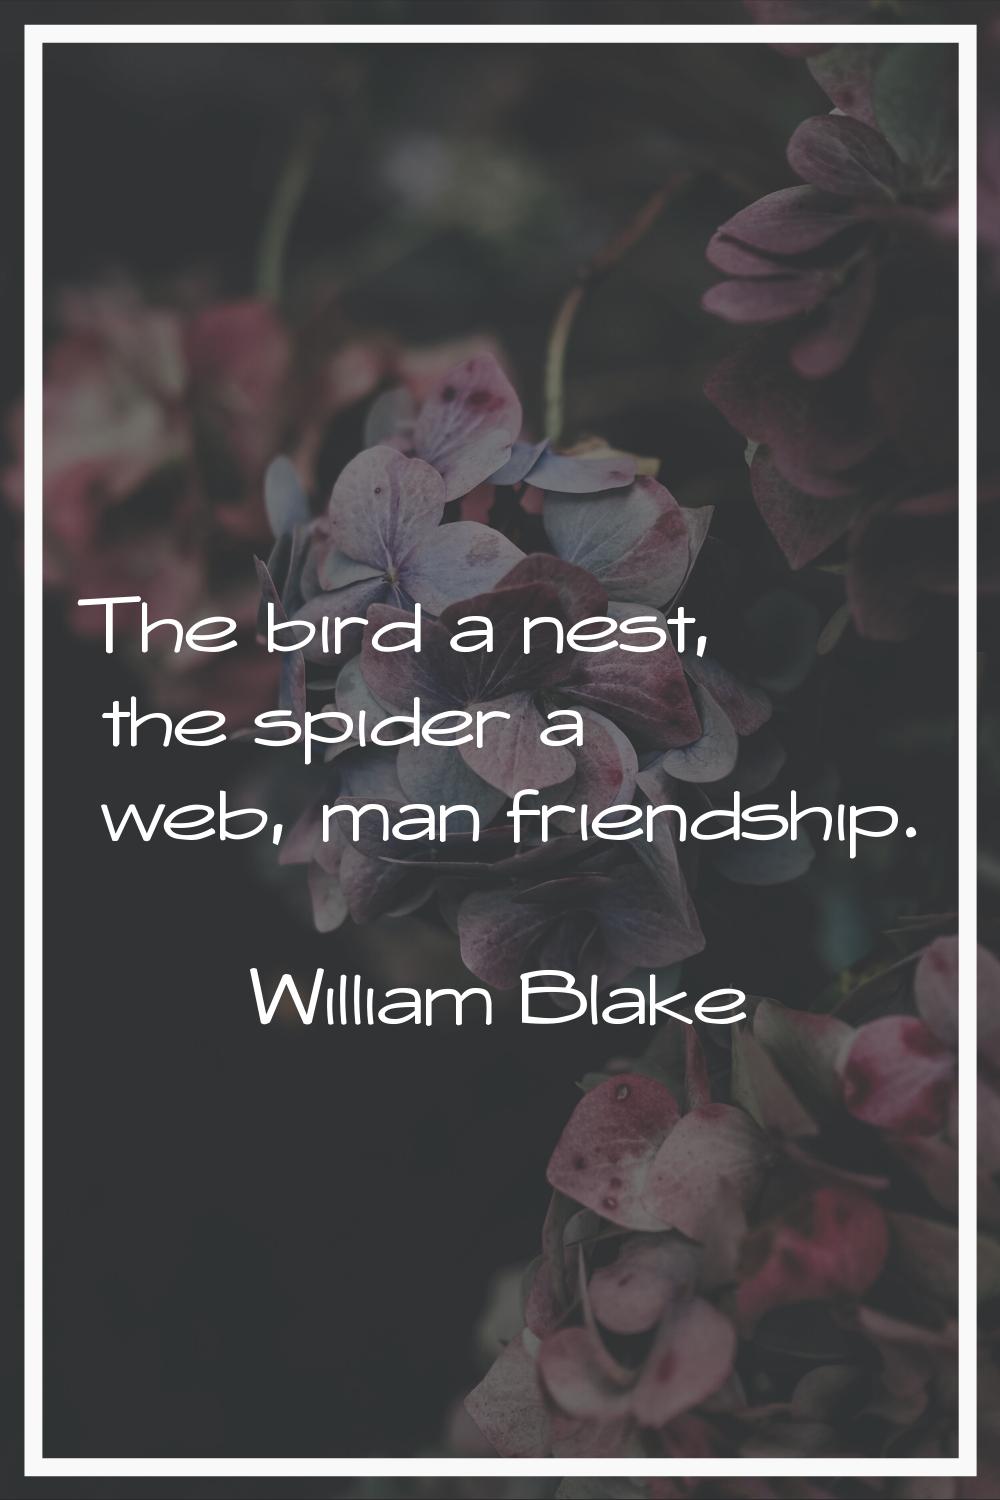 The bird a nest, the spider a web, man friendship.